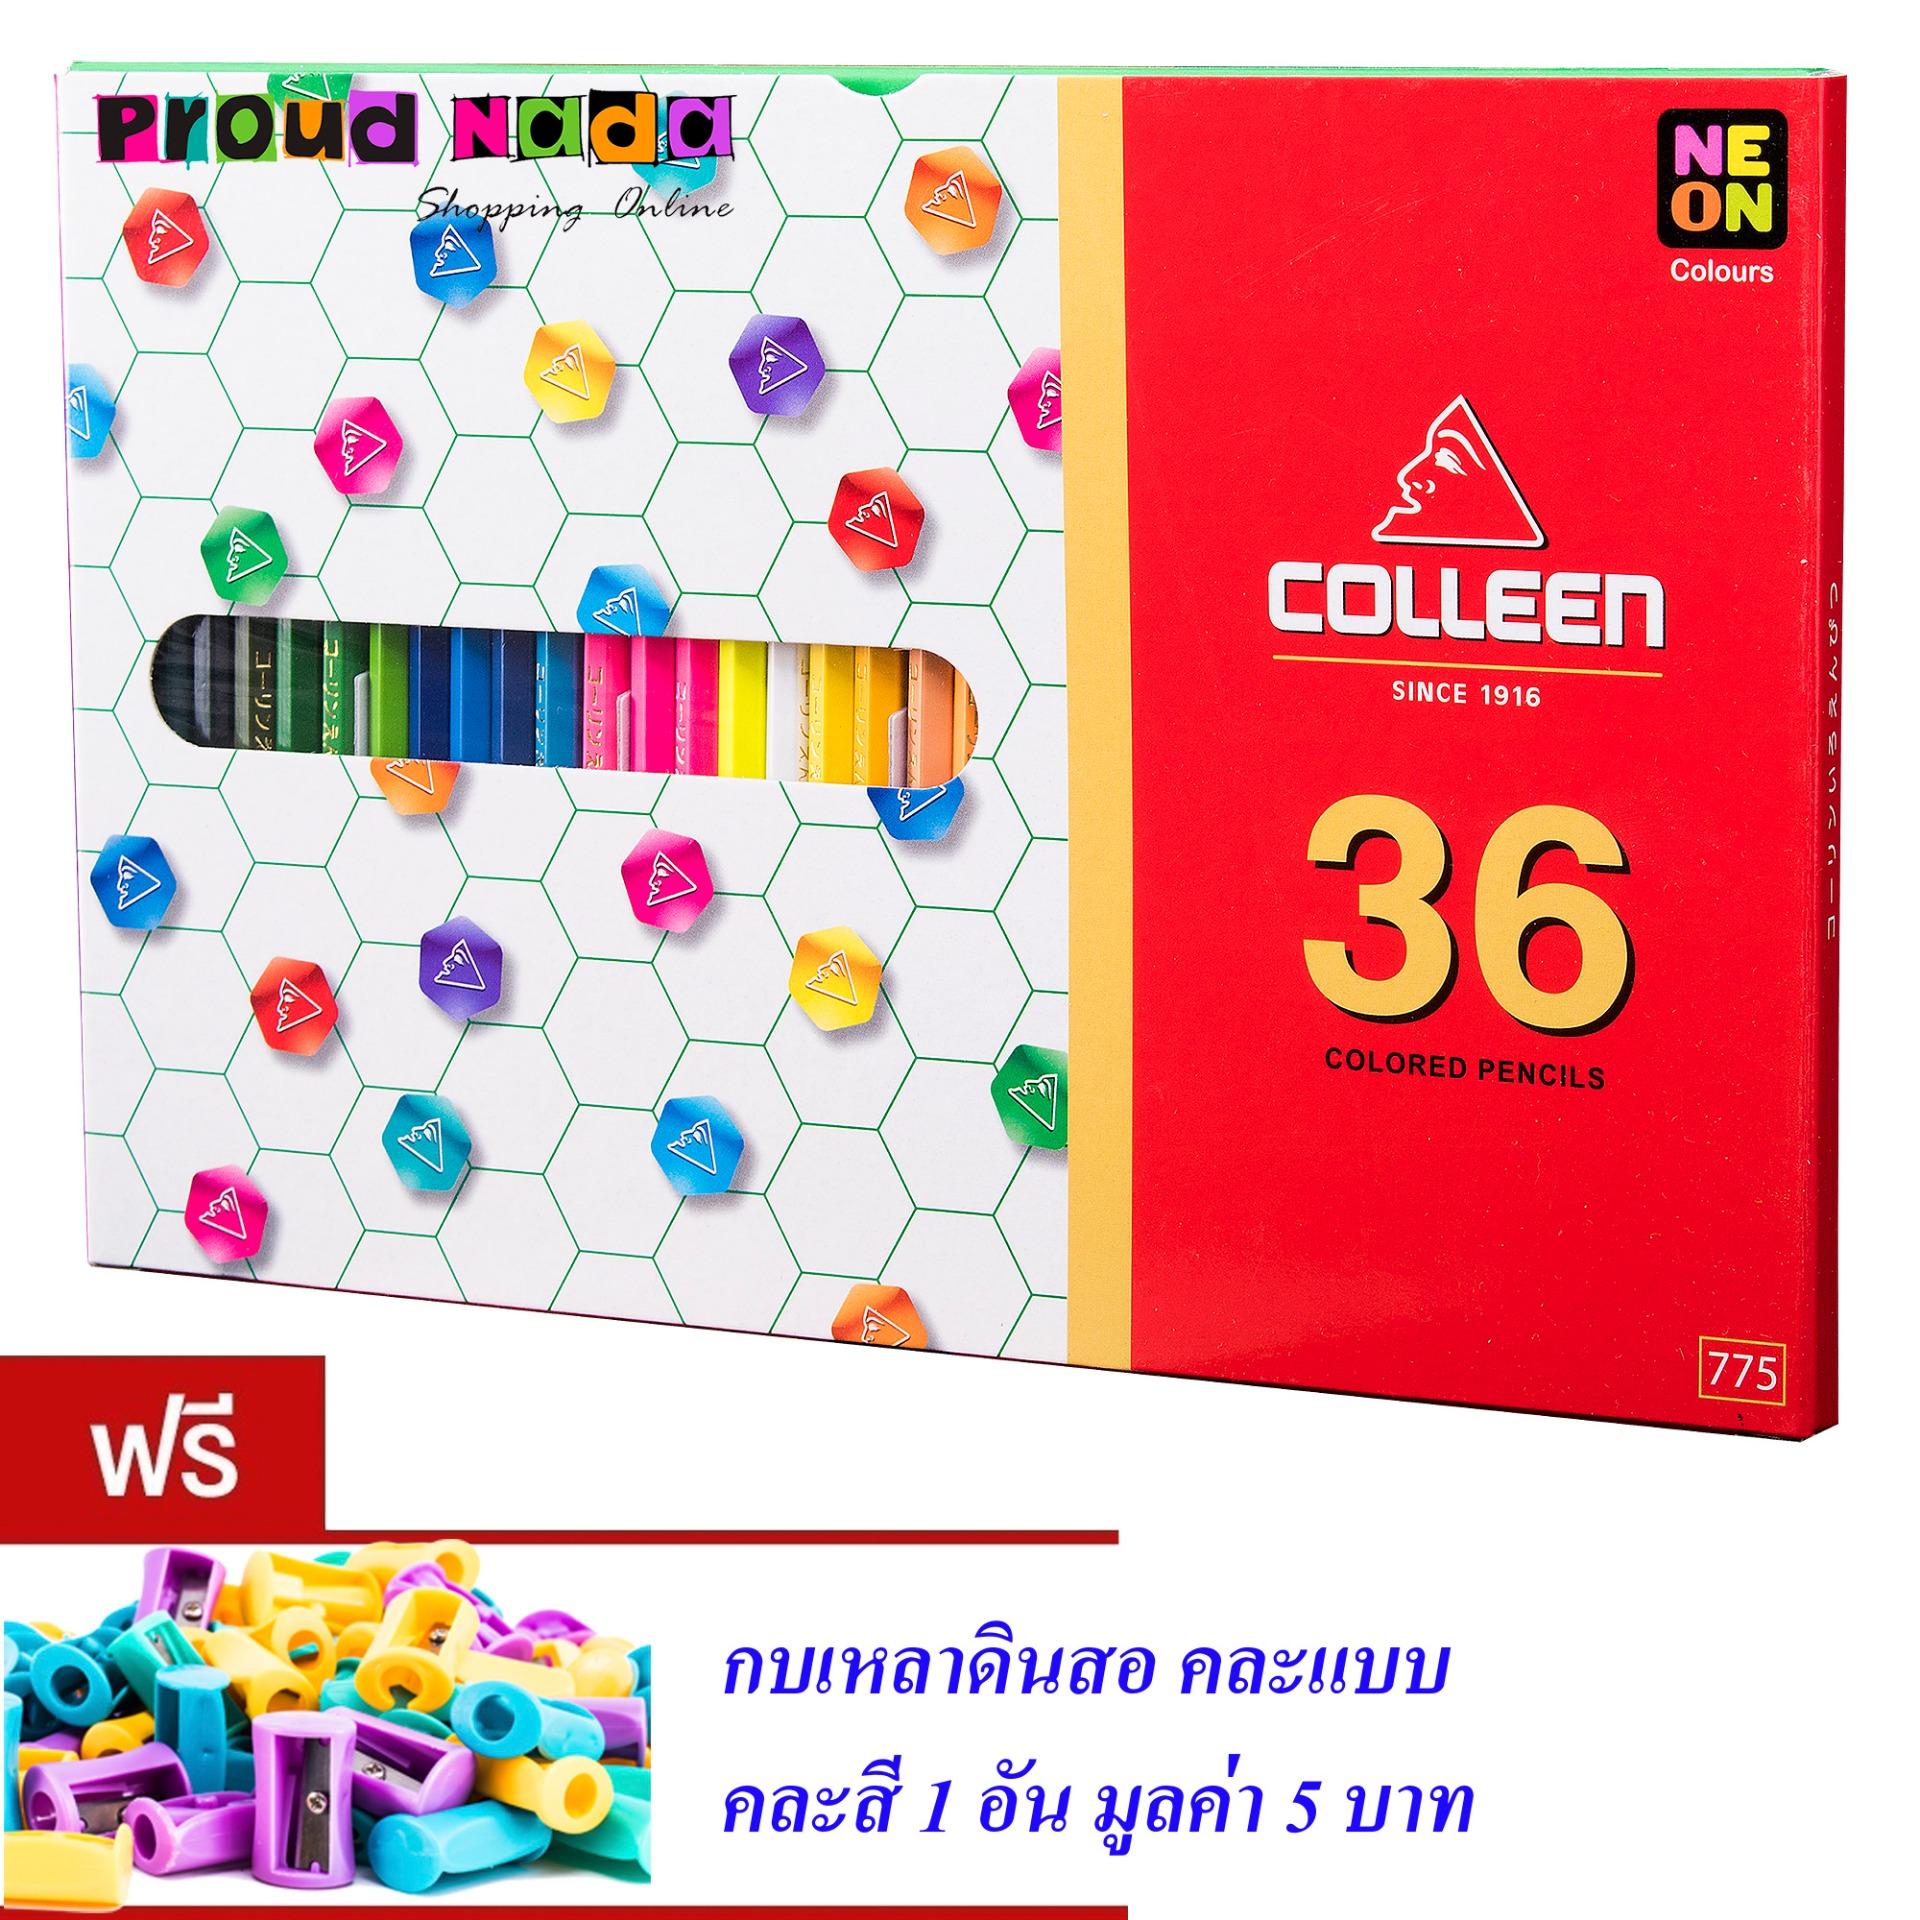 Colleen ดินสอสีไม้ คลอรีน 1 หัว 36 สี รุ่น775 สีธรรมดา+นีออน(สะท้อนแสง) (แถมฟรีกบเหลา 1 อัน)